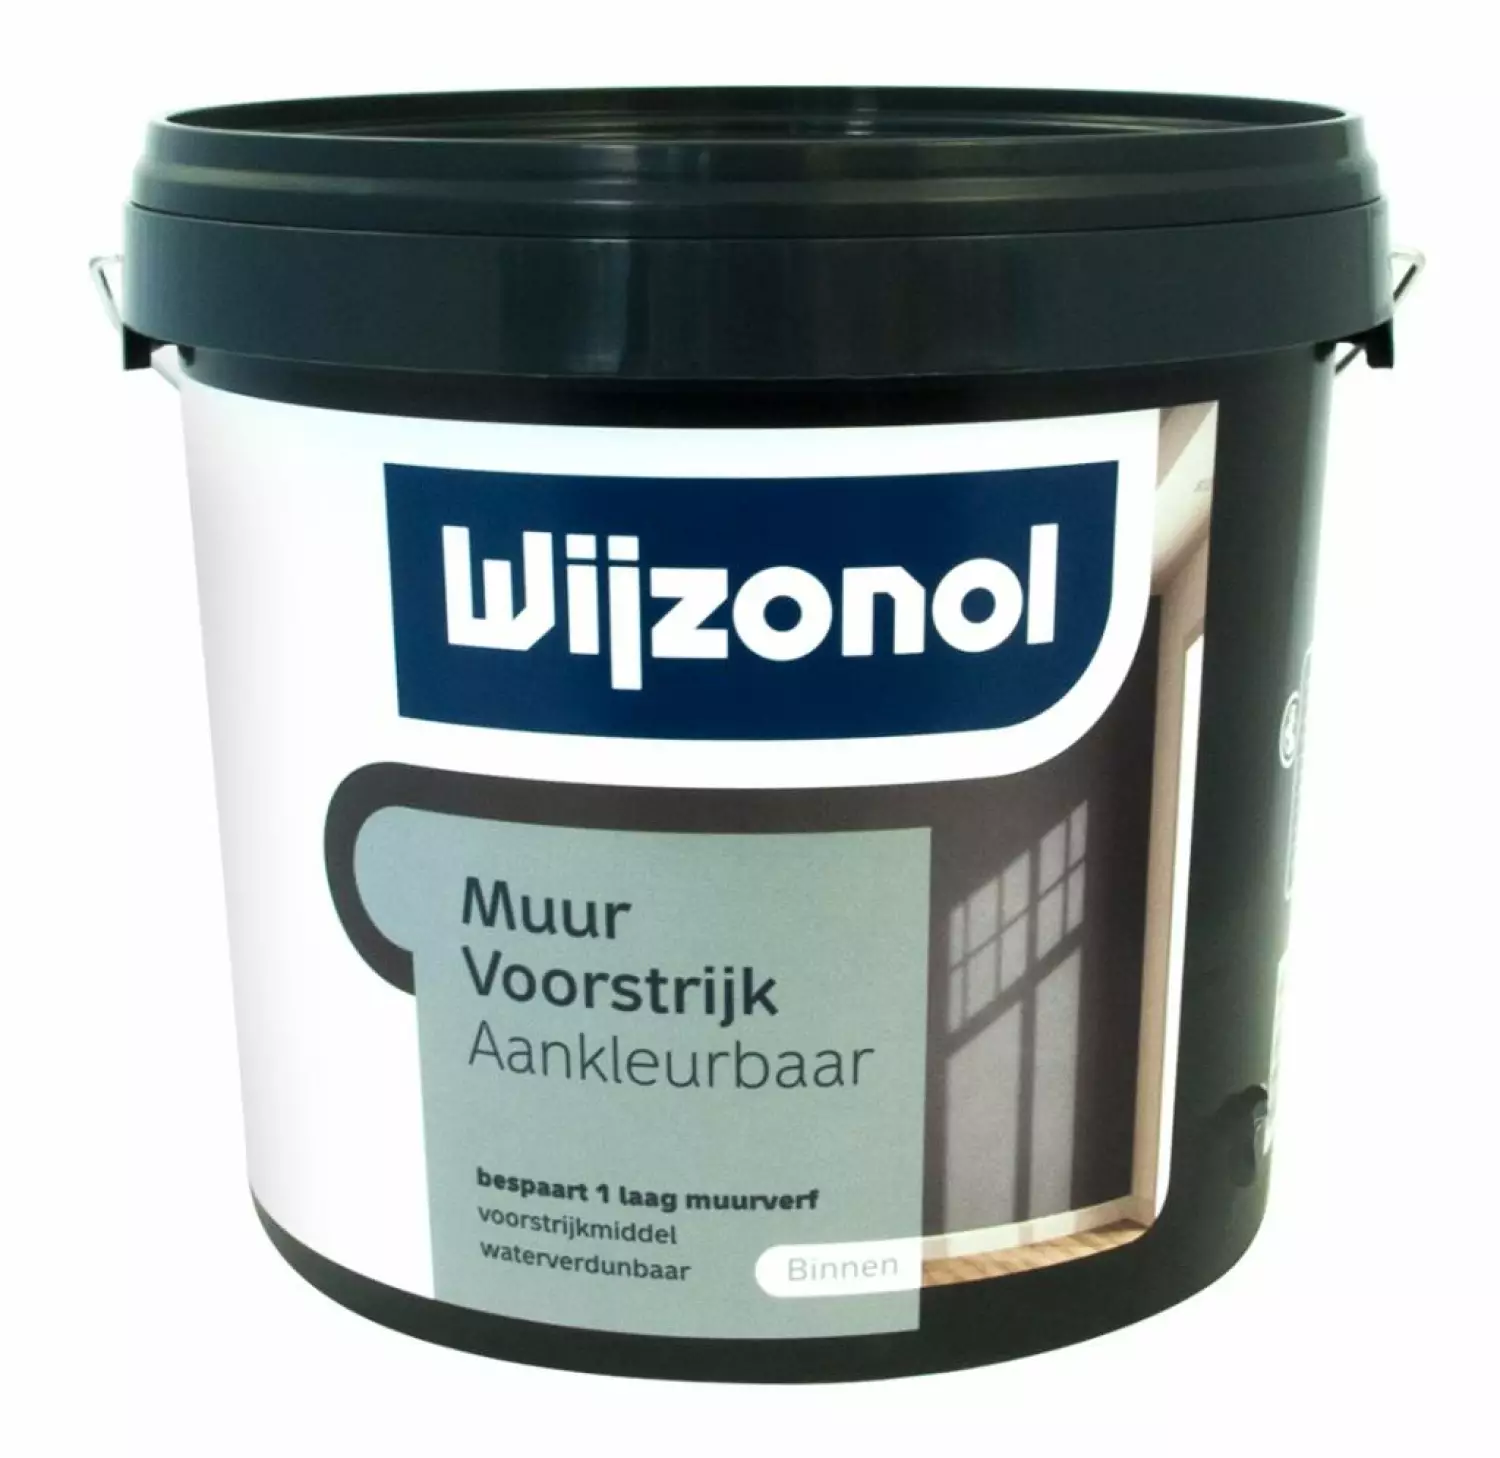 Wijzonol Muurvoorstrijk Aankleurbaar - op kleur gemengd - 2,5L-image